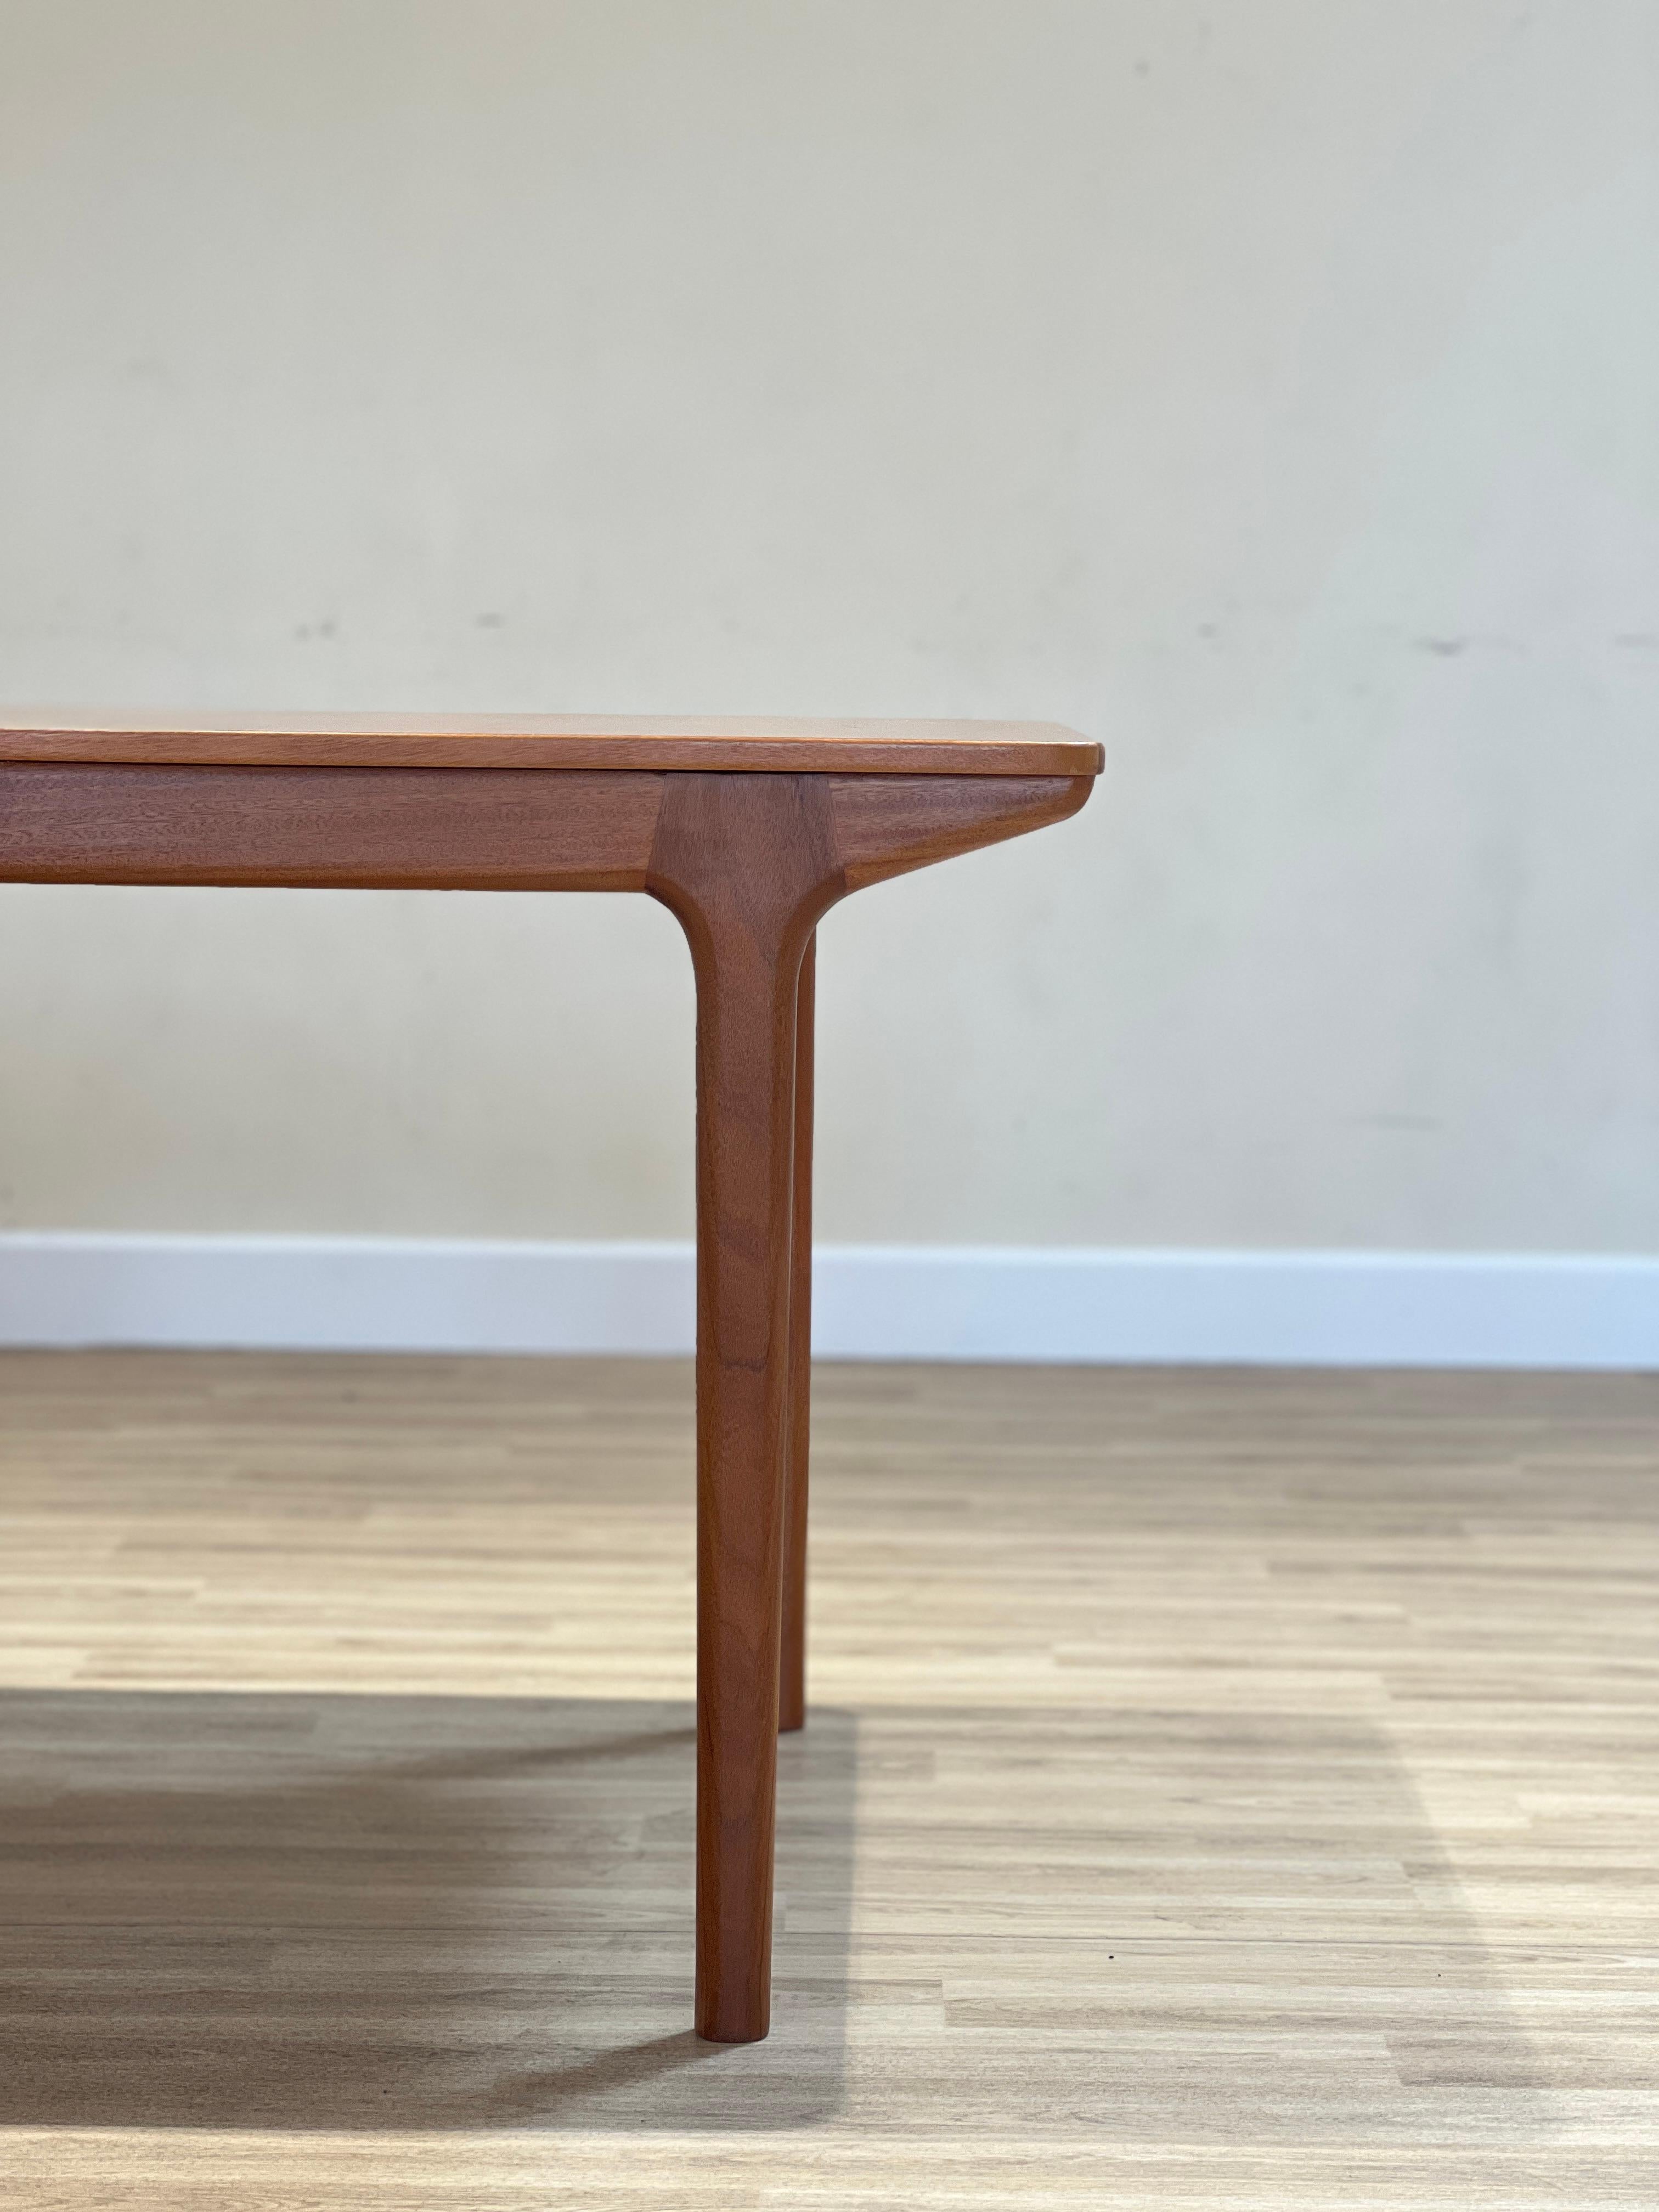 Table de salle à manger à rallonge conçue par Tom Robertson pour la collection Dunvegan de McIntosh dans les années 70. Cette pièce, en teck, conserve la signature originale avec l'année.

Cette table est devenue l'une des icônes de la marque, son